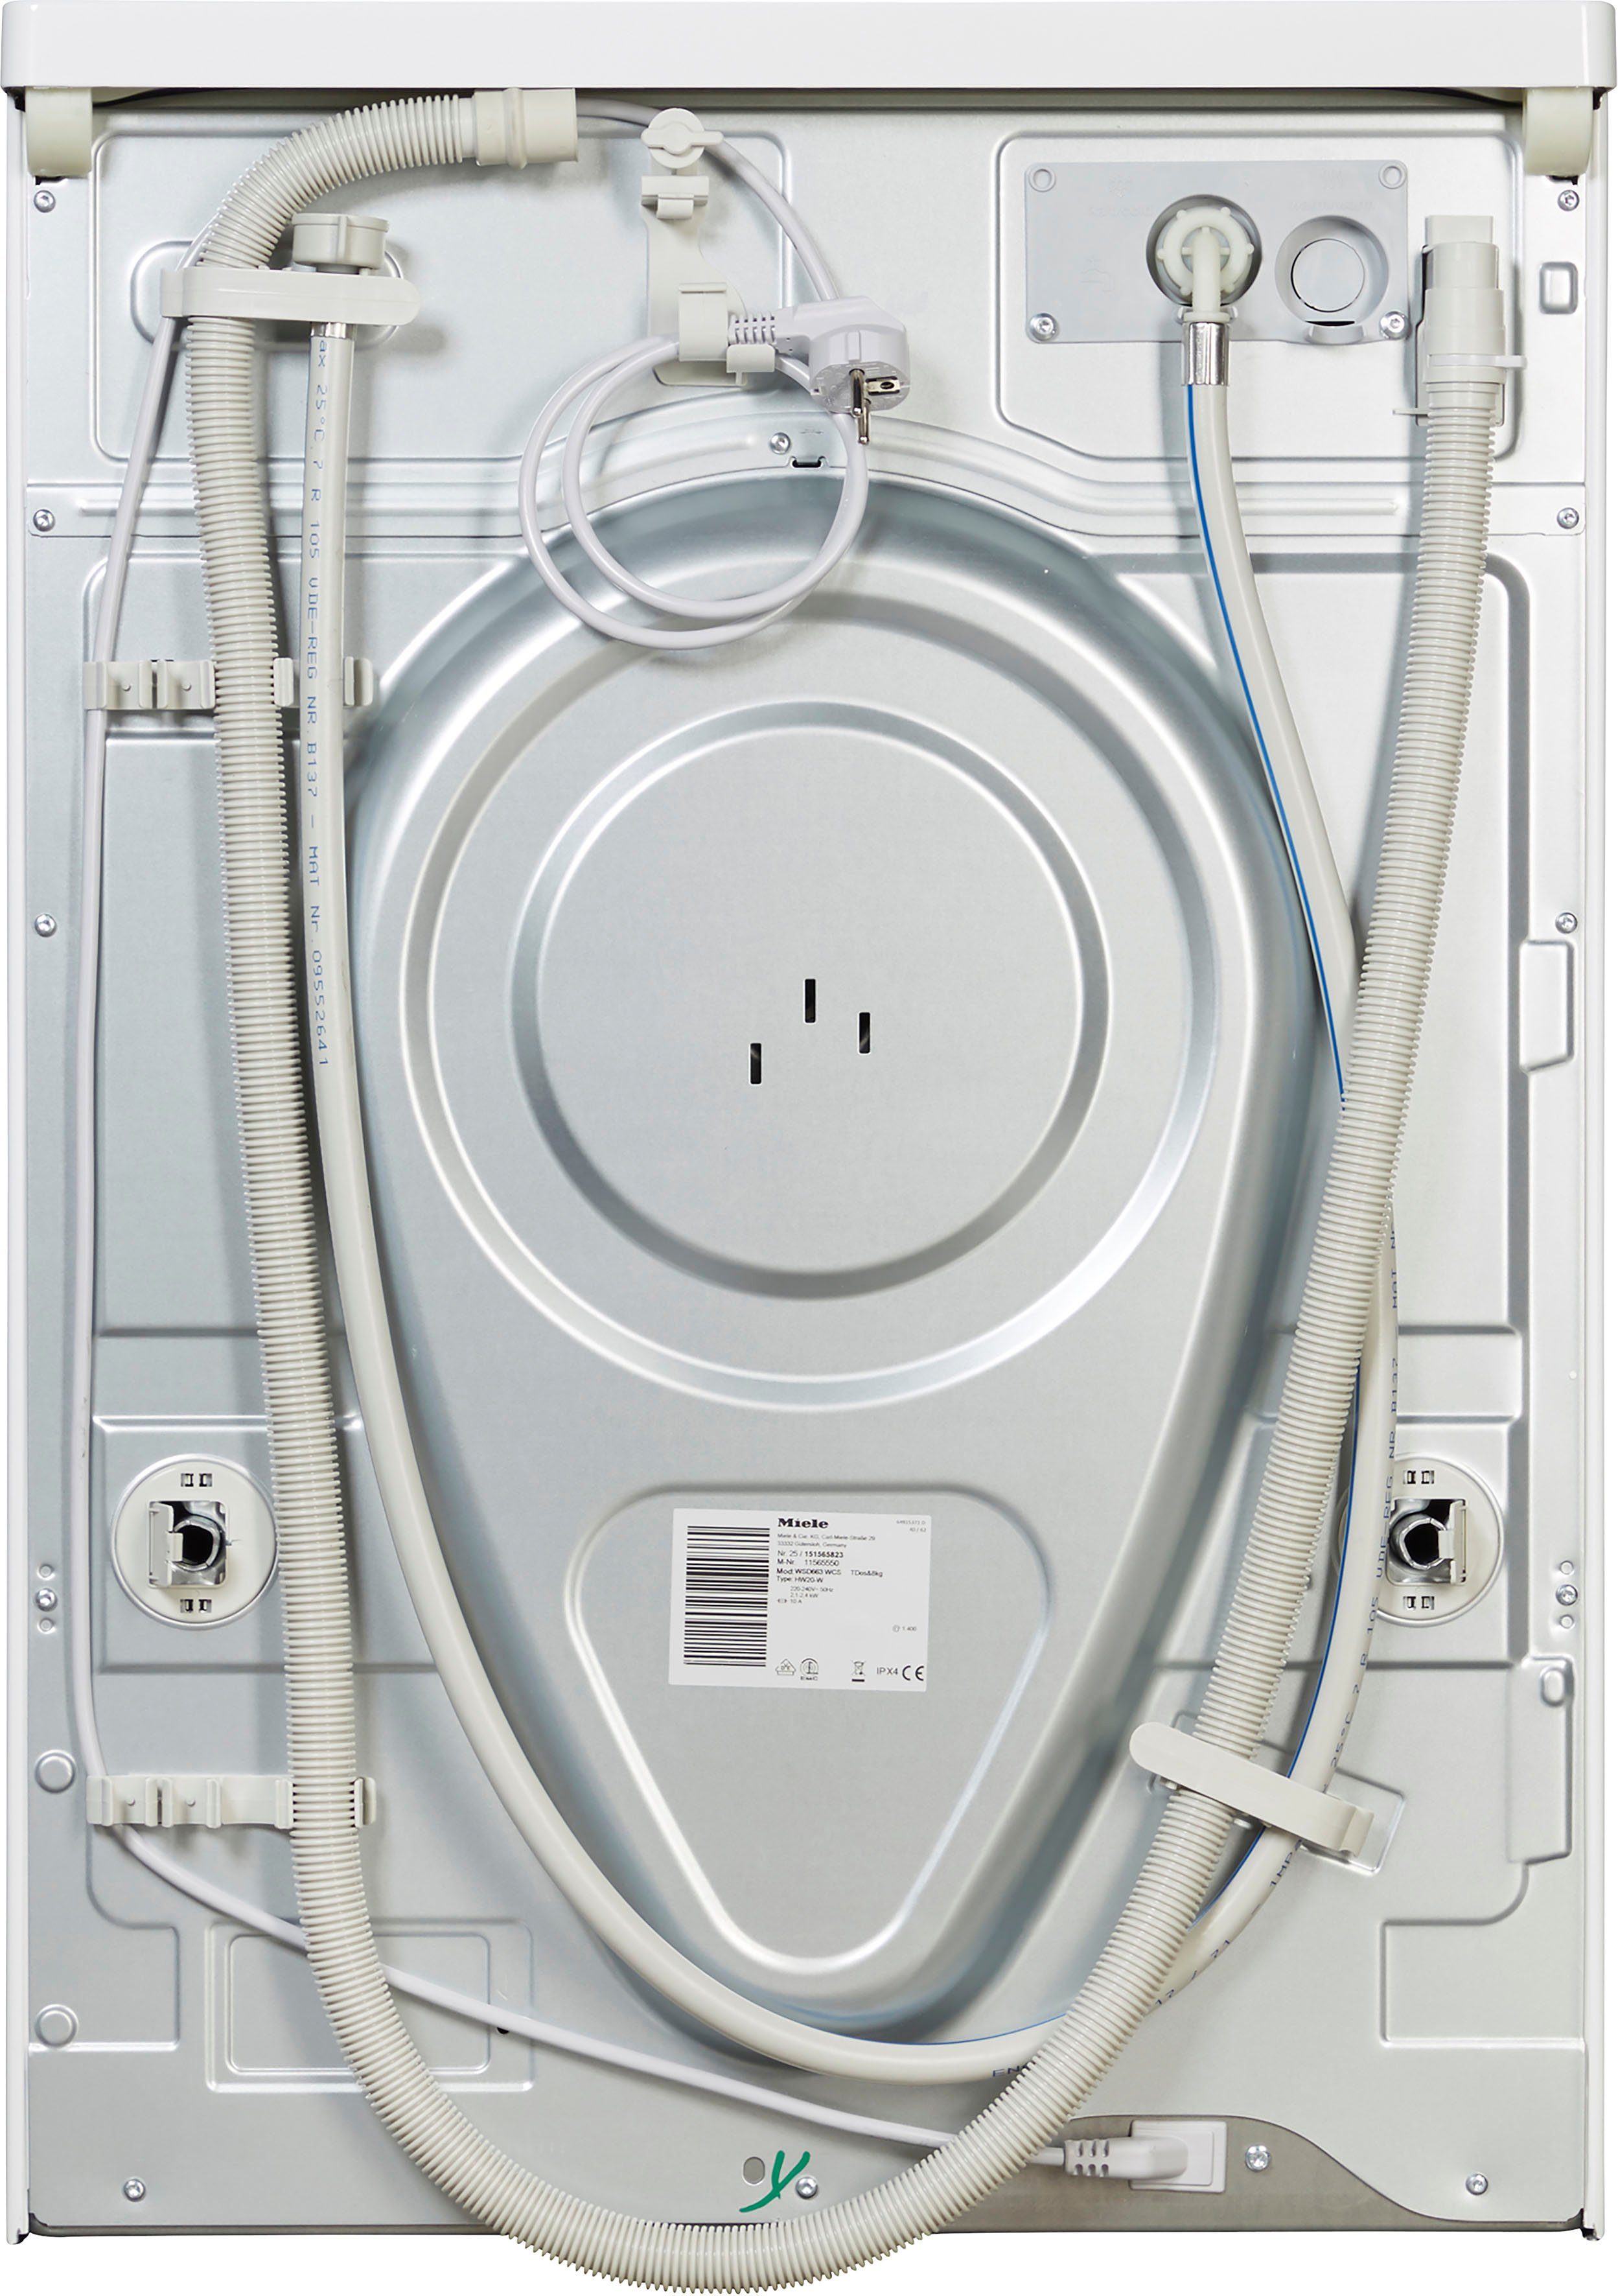 Miele Waschmaschine ModernLife WSD663 8 TwinDos automatischen zur TDos&8kg, 1400 kg, Waschmitteldosierung WCS U/min